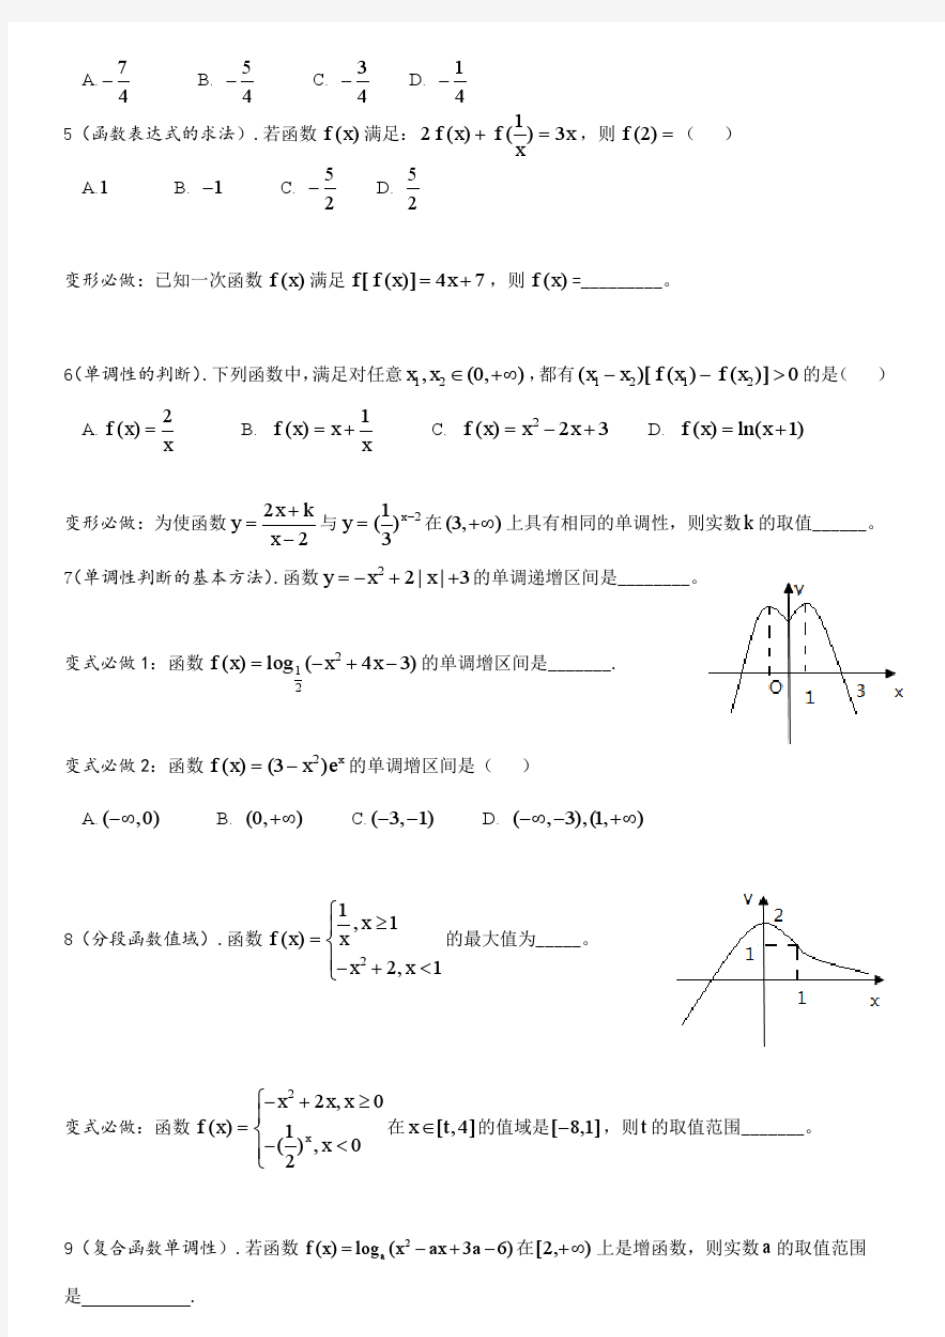 函数概念及表示与函数的单调性.pdf